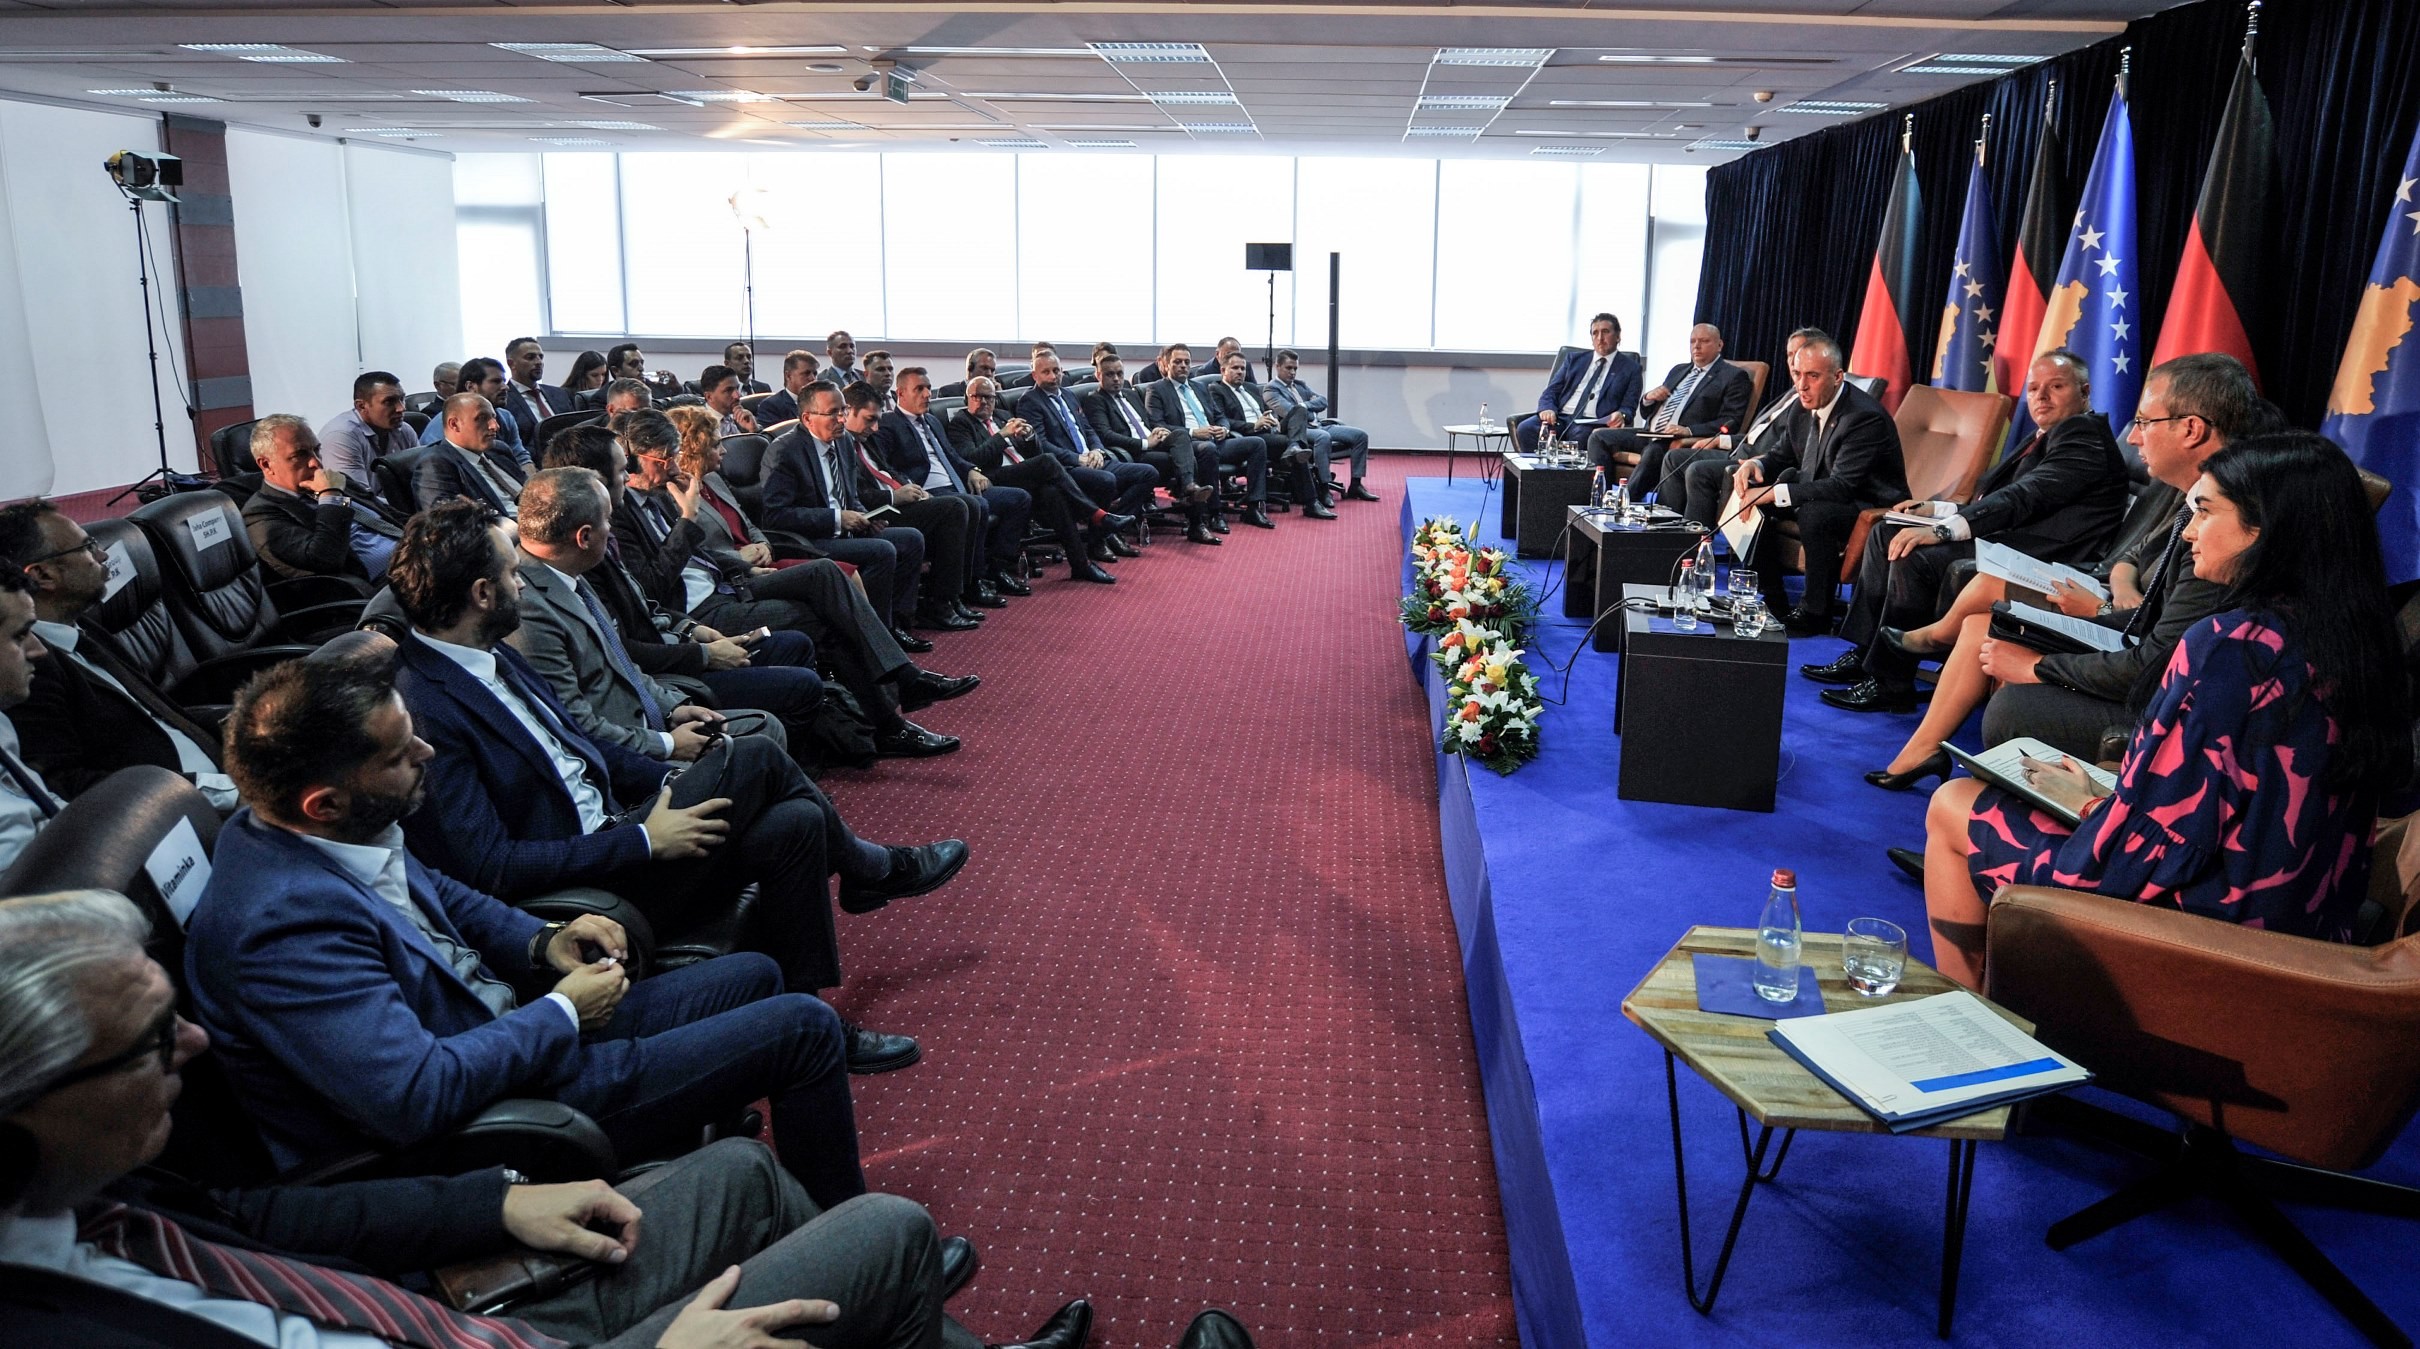 Kryeministri Haradinaj ofron përkrahjen e Qeverisë për bizneset nga diaspora